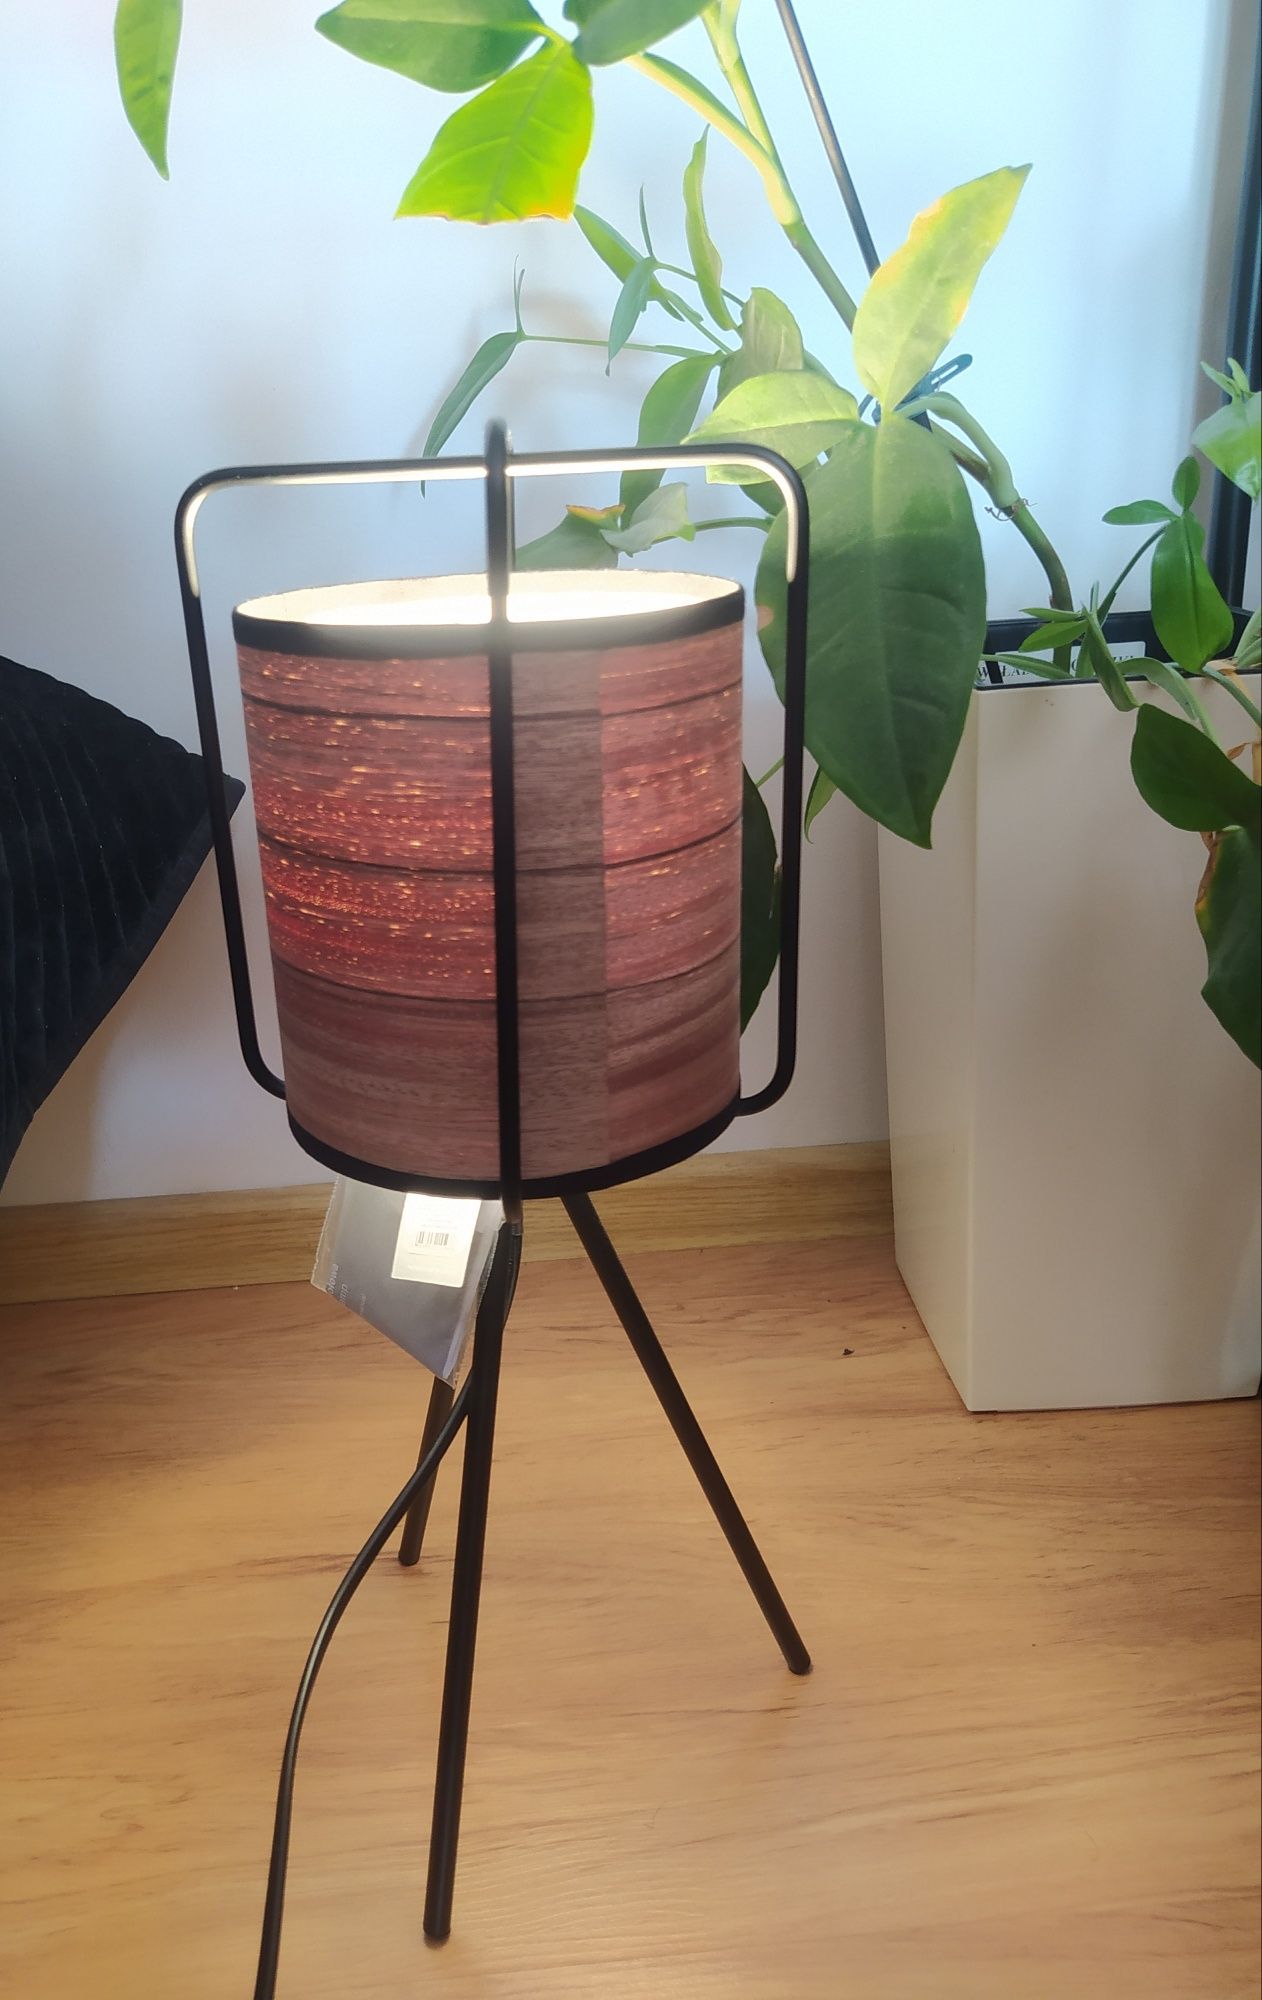 Lampa lampka Home and You stołowa lub podłogowa styl loftowy lub klasy